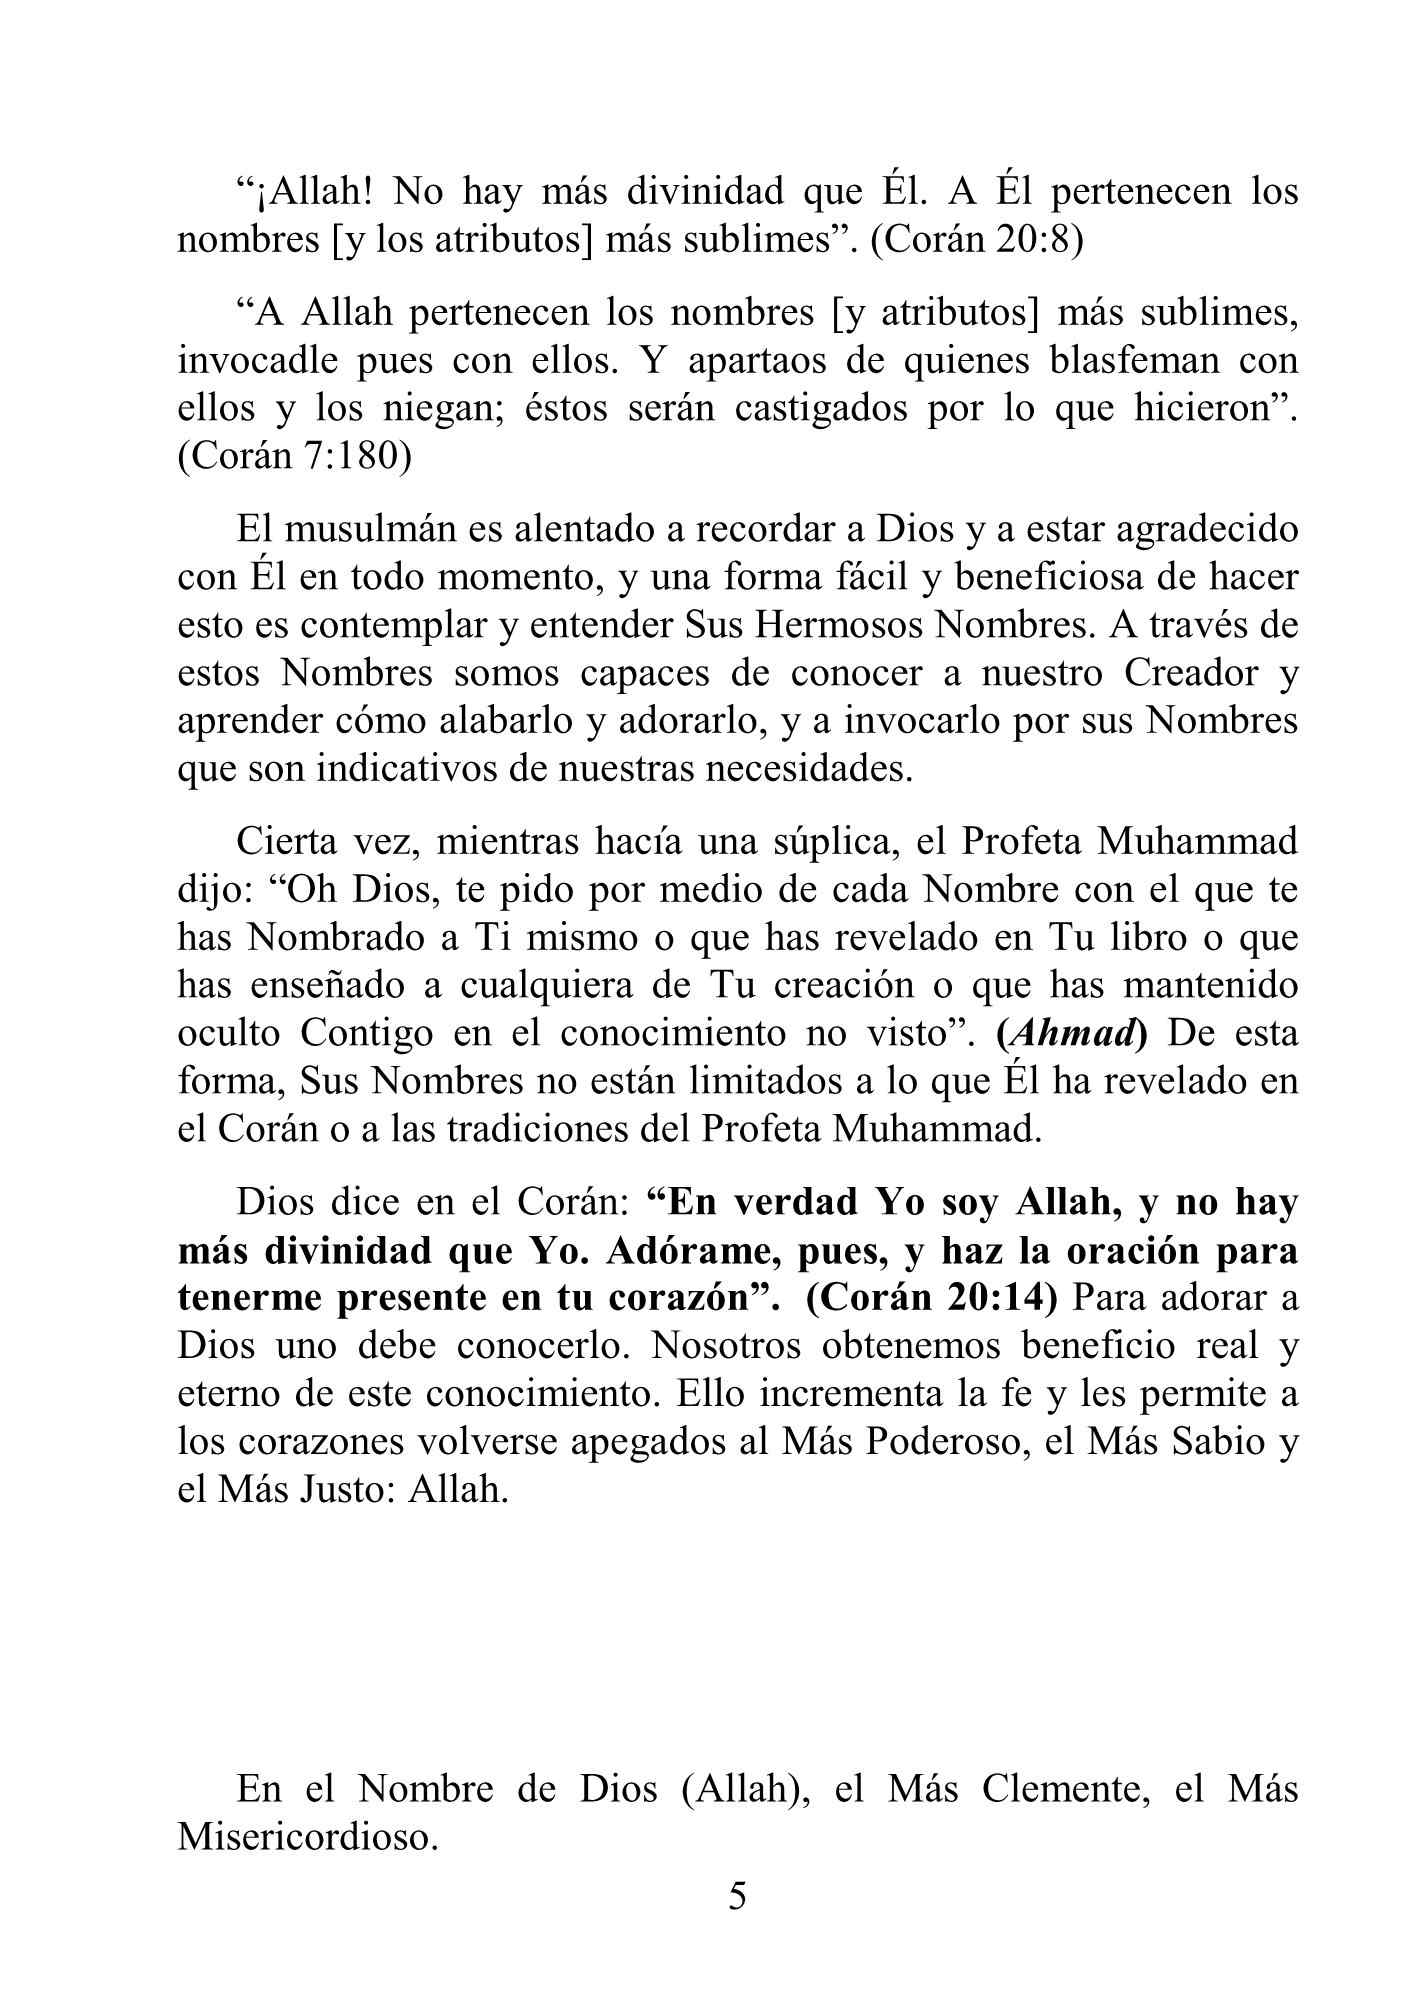 إسباني - أسماء الله الحسنى - Los Nombres de Dios.pdf, 14-Sayfa 